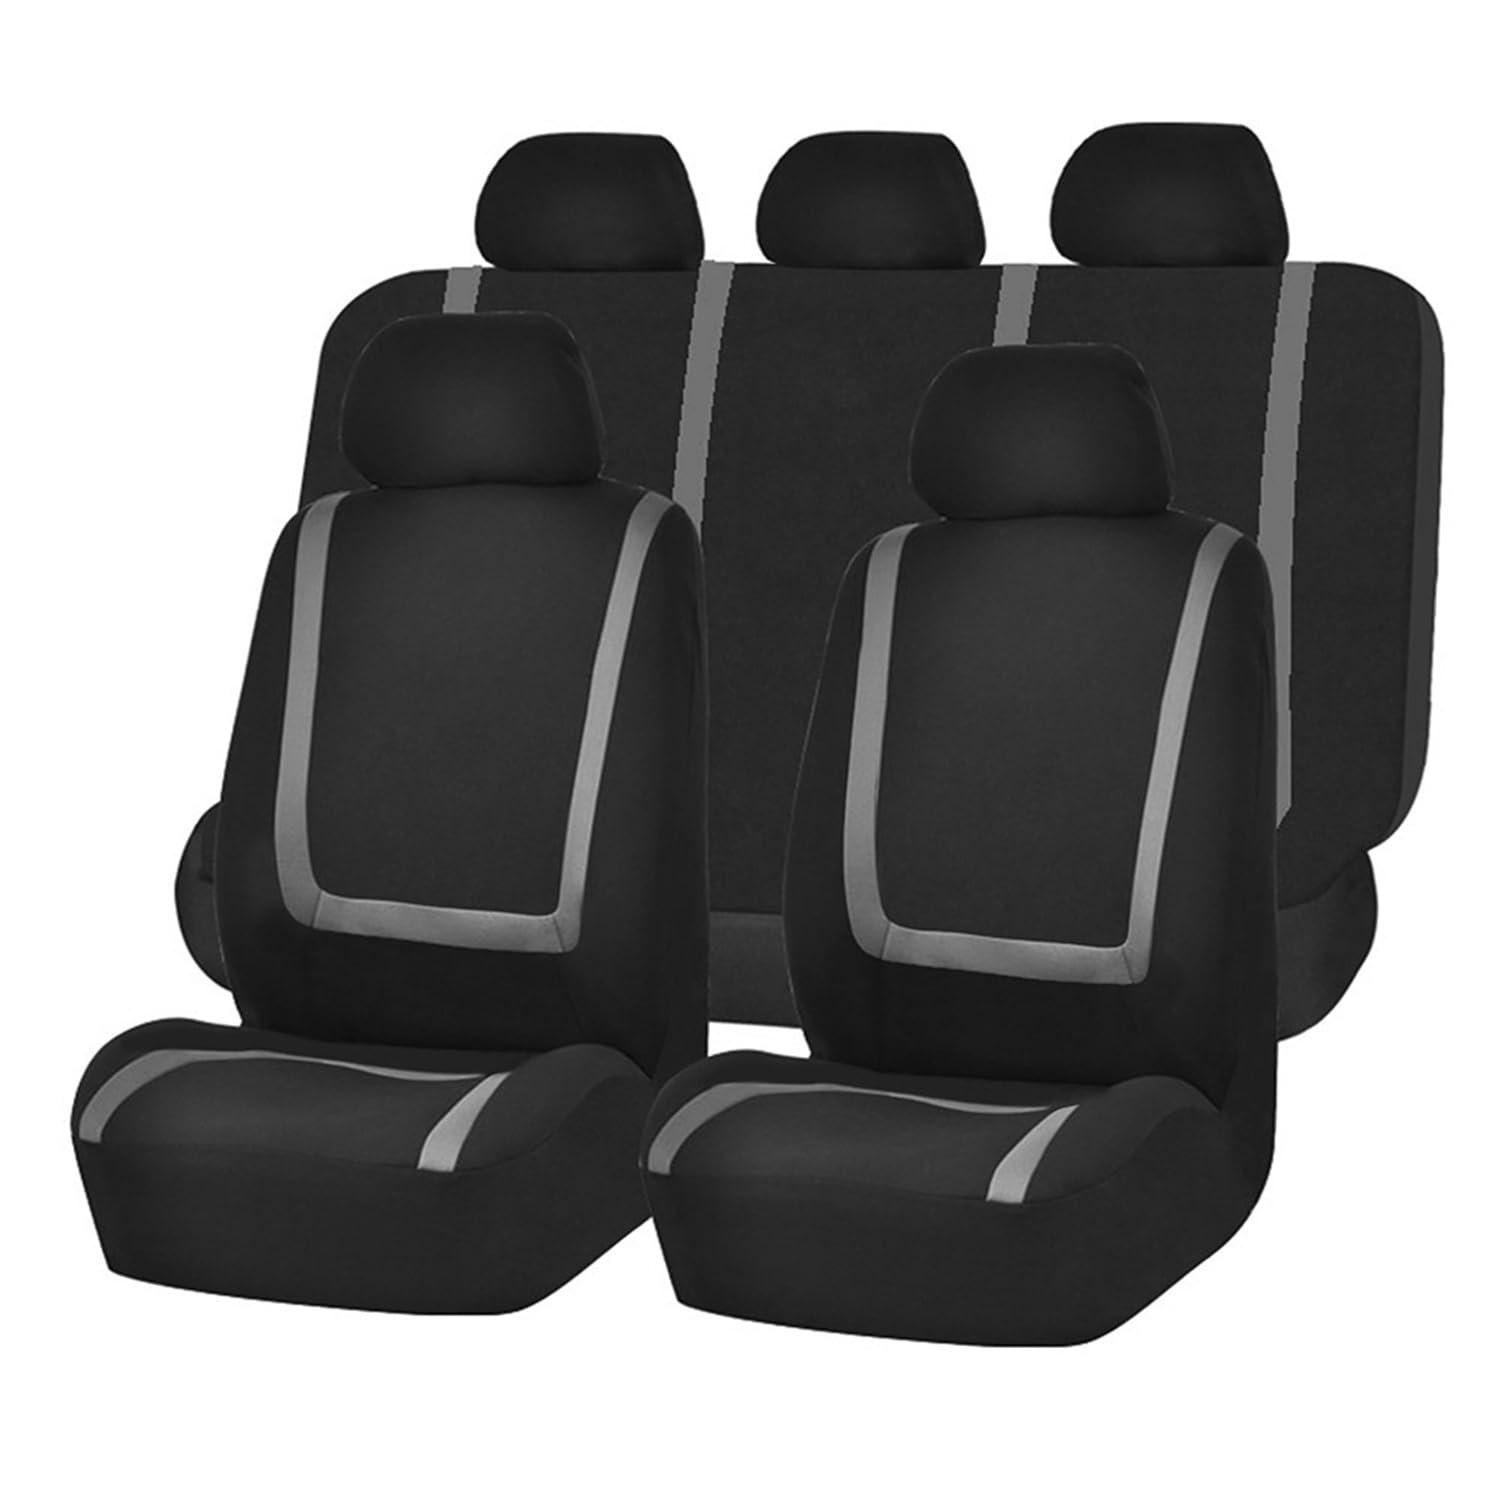 LeiBaOF 9-teiliges Allwetter-Sitzbezug-Set,rutschfest,wasserdicht,atmungsaktiv,Sitzkissenschutz für Toyota Hilux (AN120/AN130) 8.Gen 2015 2016 2017 2018 2019 2020 2021 2022 2023,C-black gray von LeiBaOF